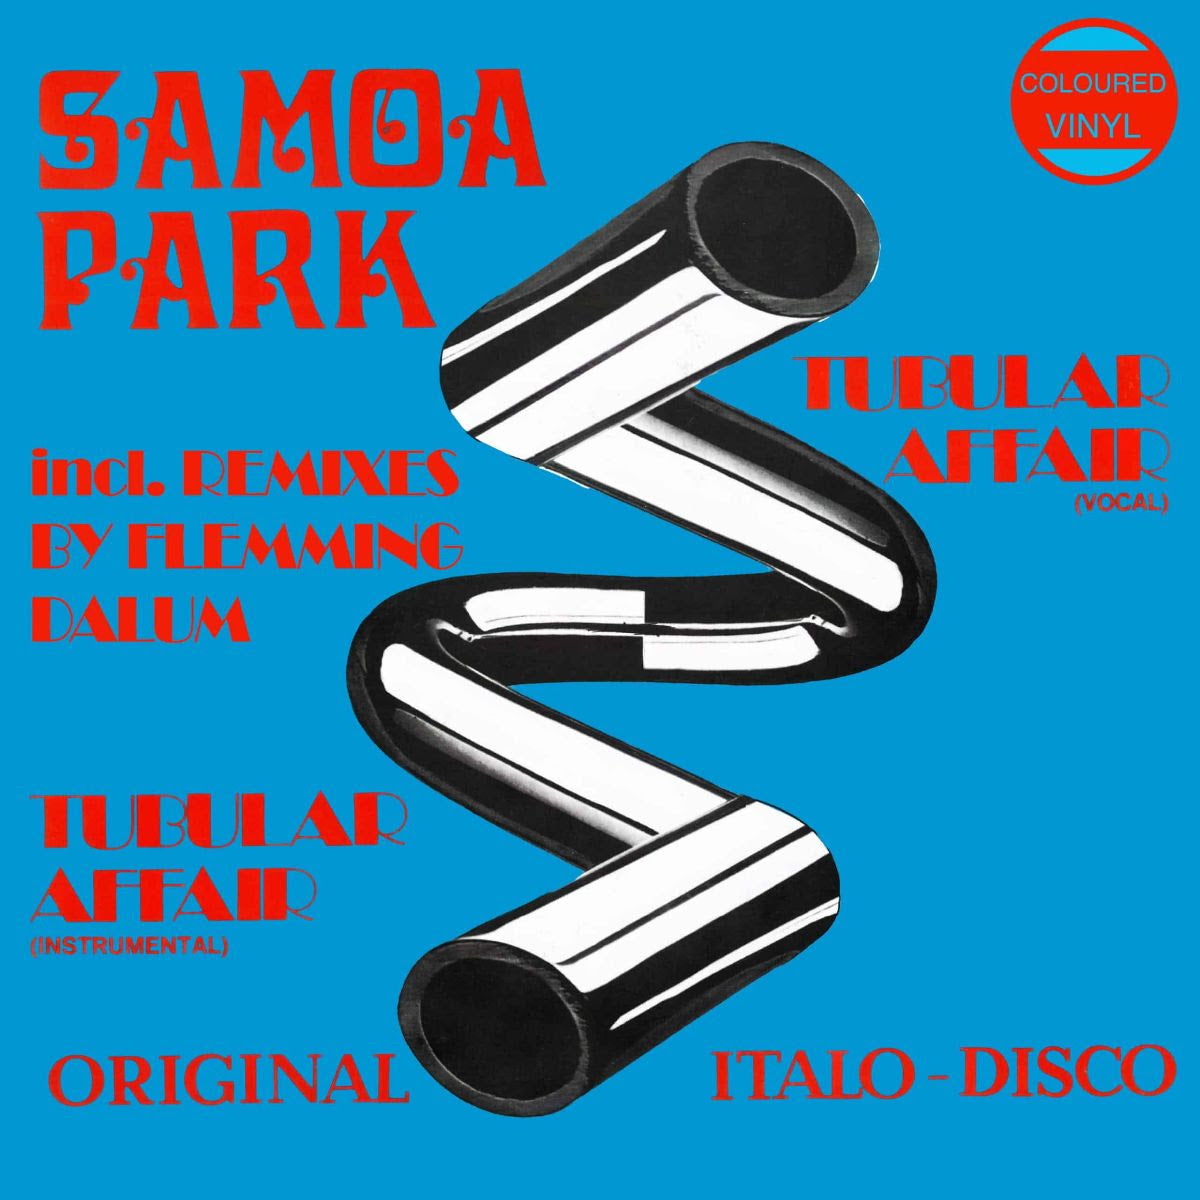 Samoa Park – Tubular Affair